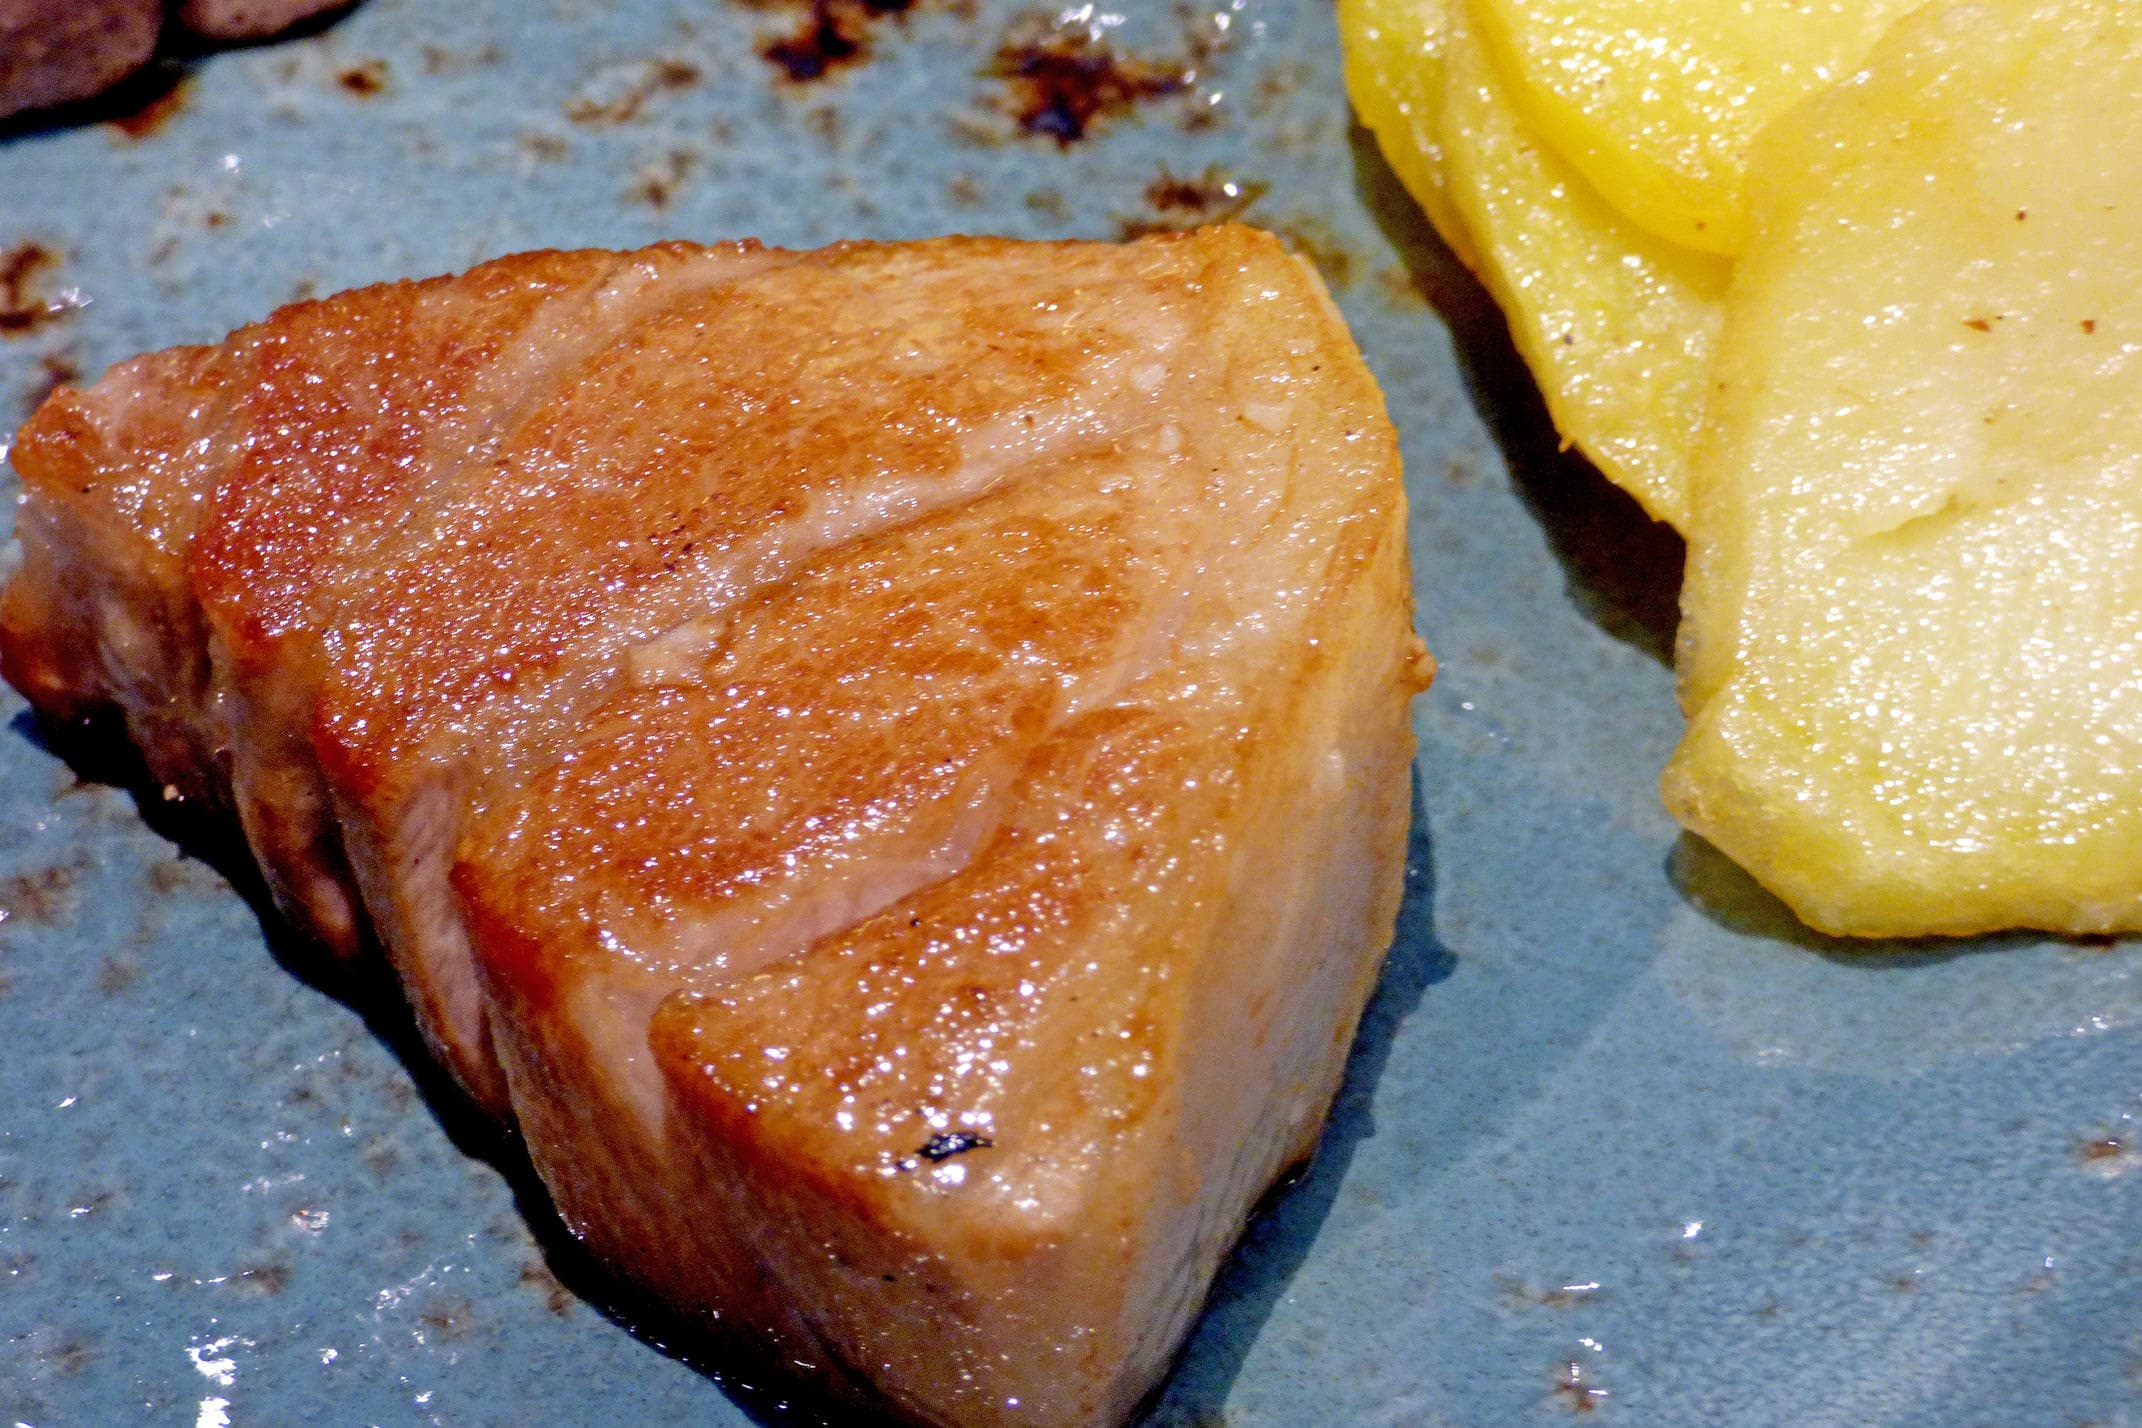 Spain andalucia cadiz barbate campero red tuna belly steak